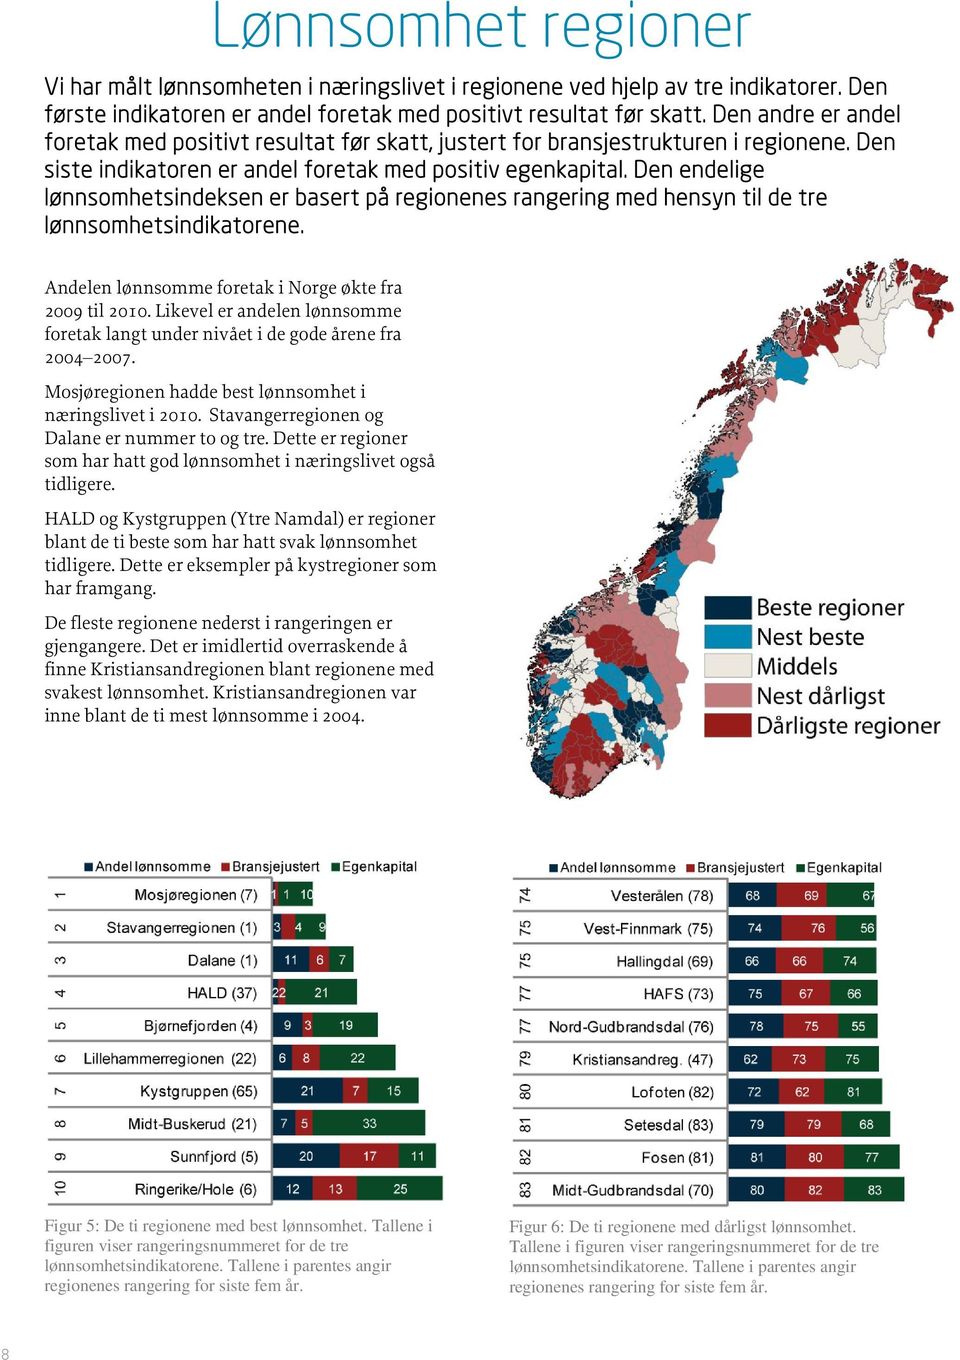 Den endelige lønnsomhetsindeksen er basert på regionenes rangering med hensyn til de tre lønnsomhetsindikatorene. Andelen lønnsomme foretak i Norge økte fra 2009 til 2010.